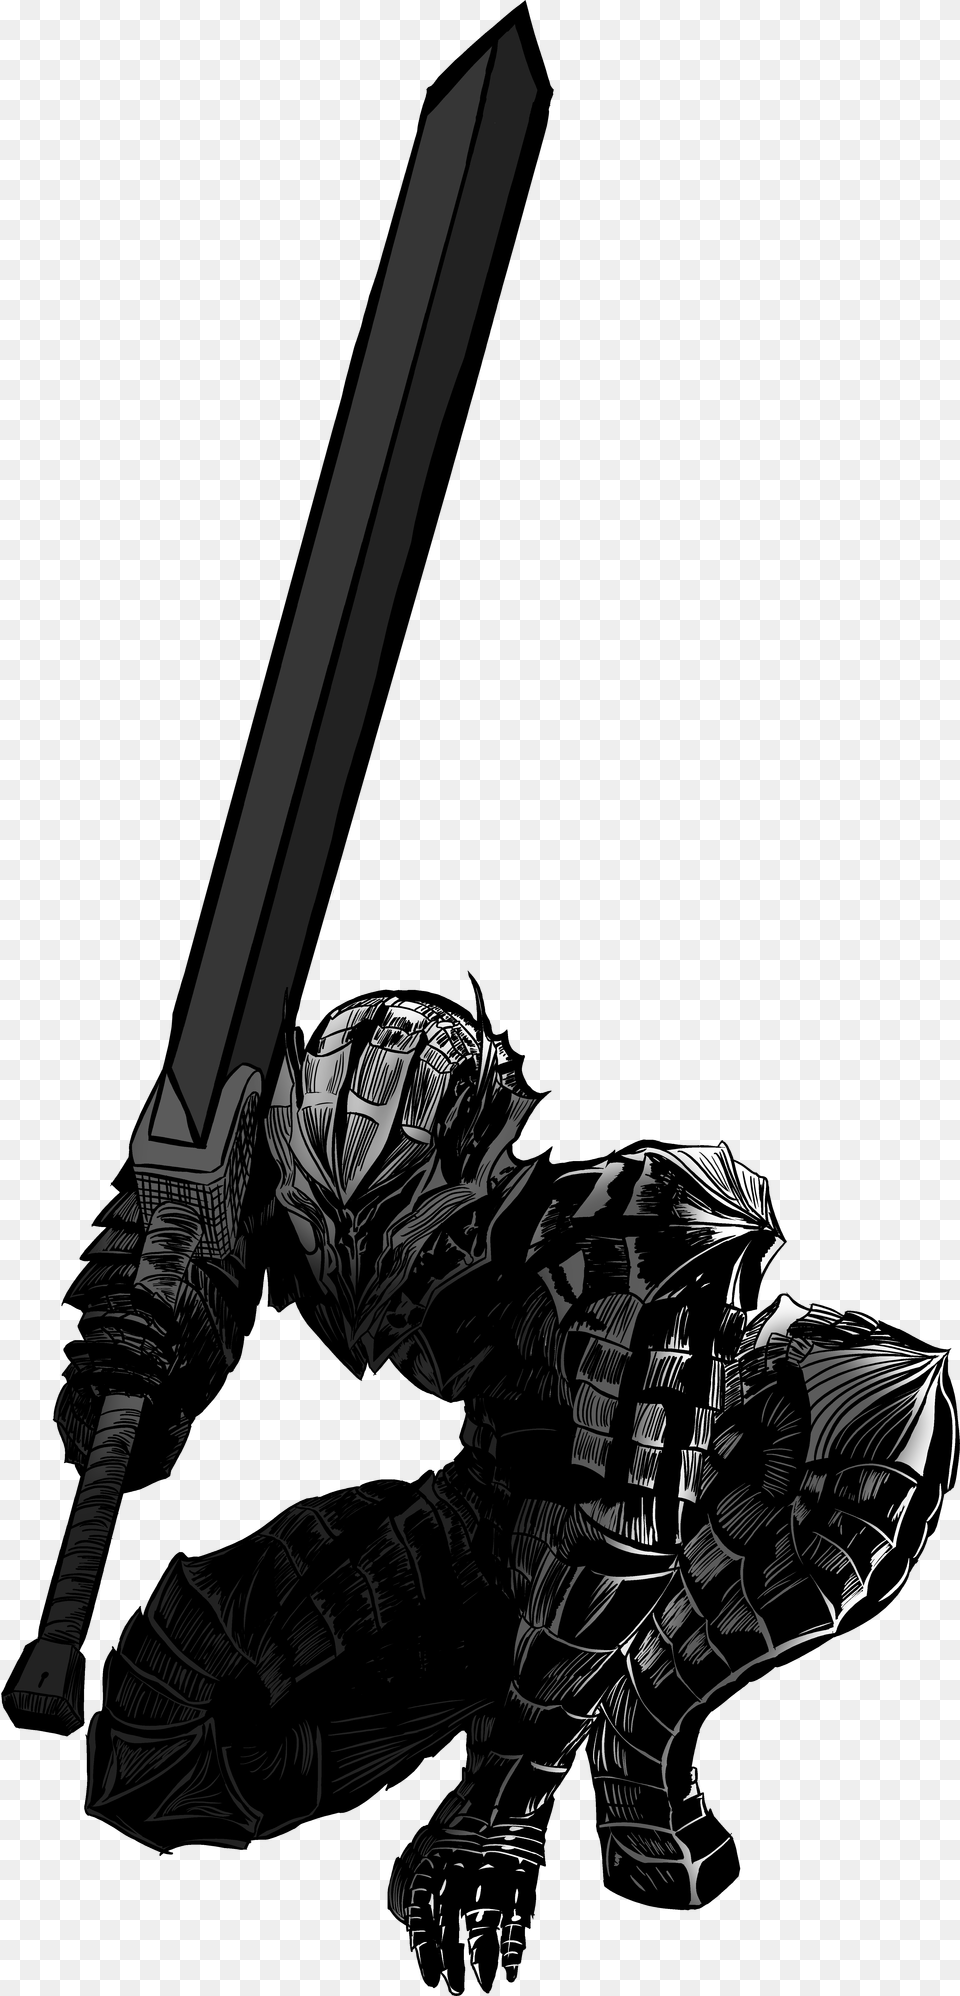 Berserk Drawing Mangapark Guts Berserk, Sword, Weapon, Adult, Male Png Image